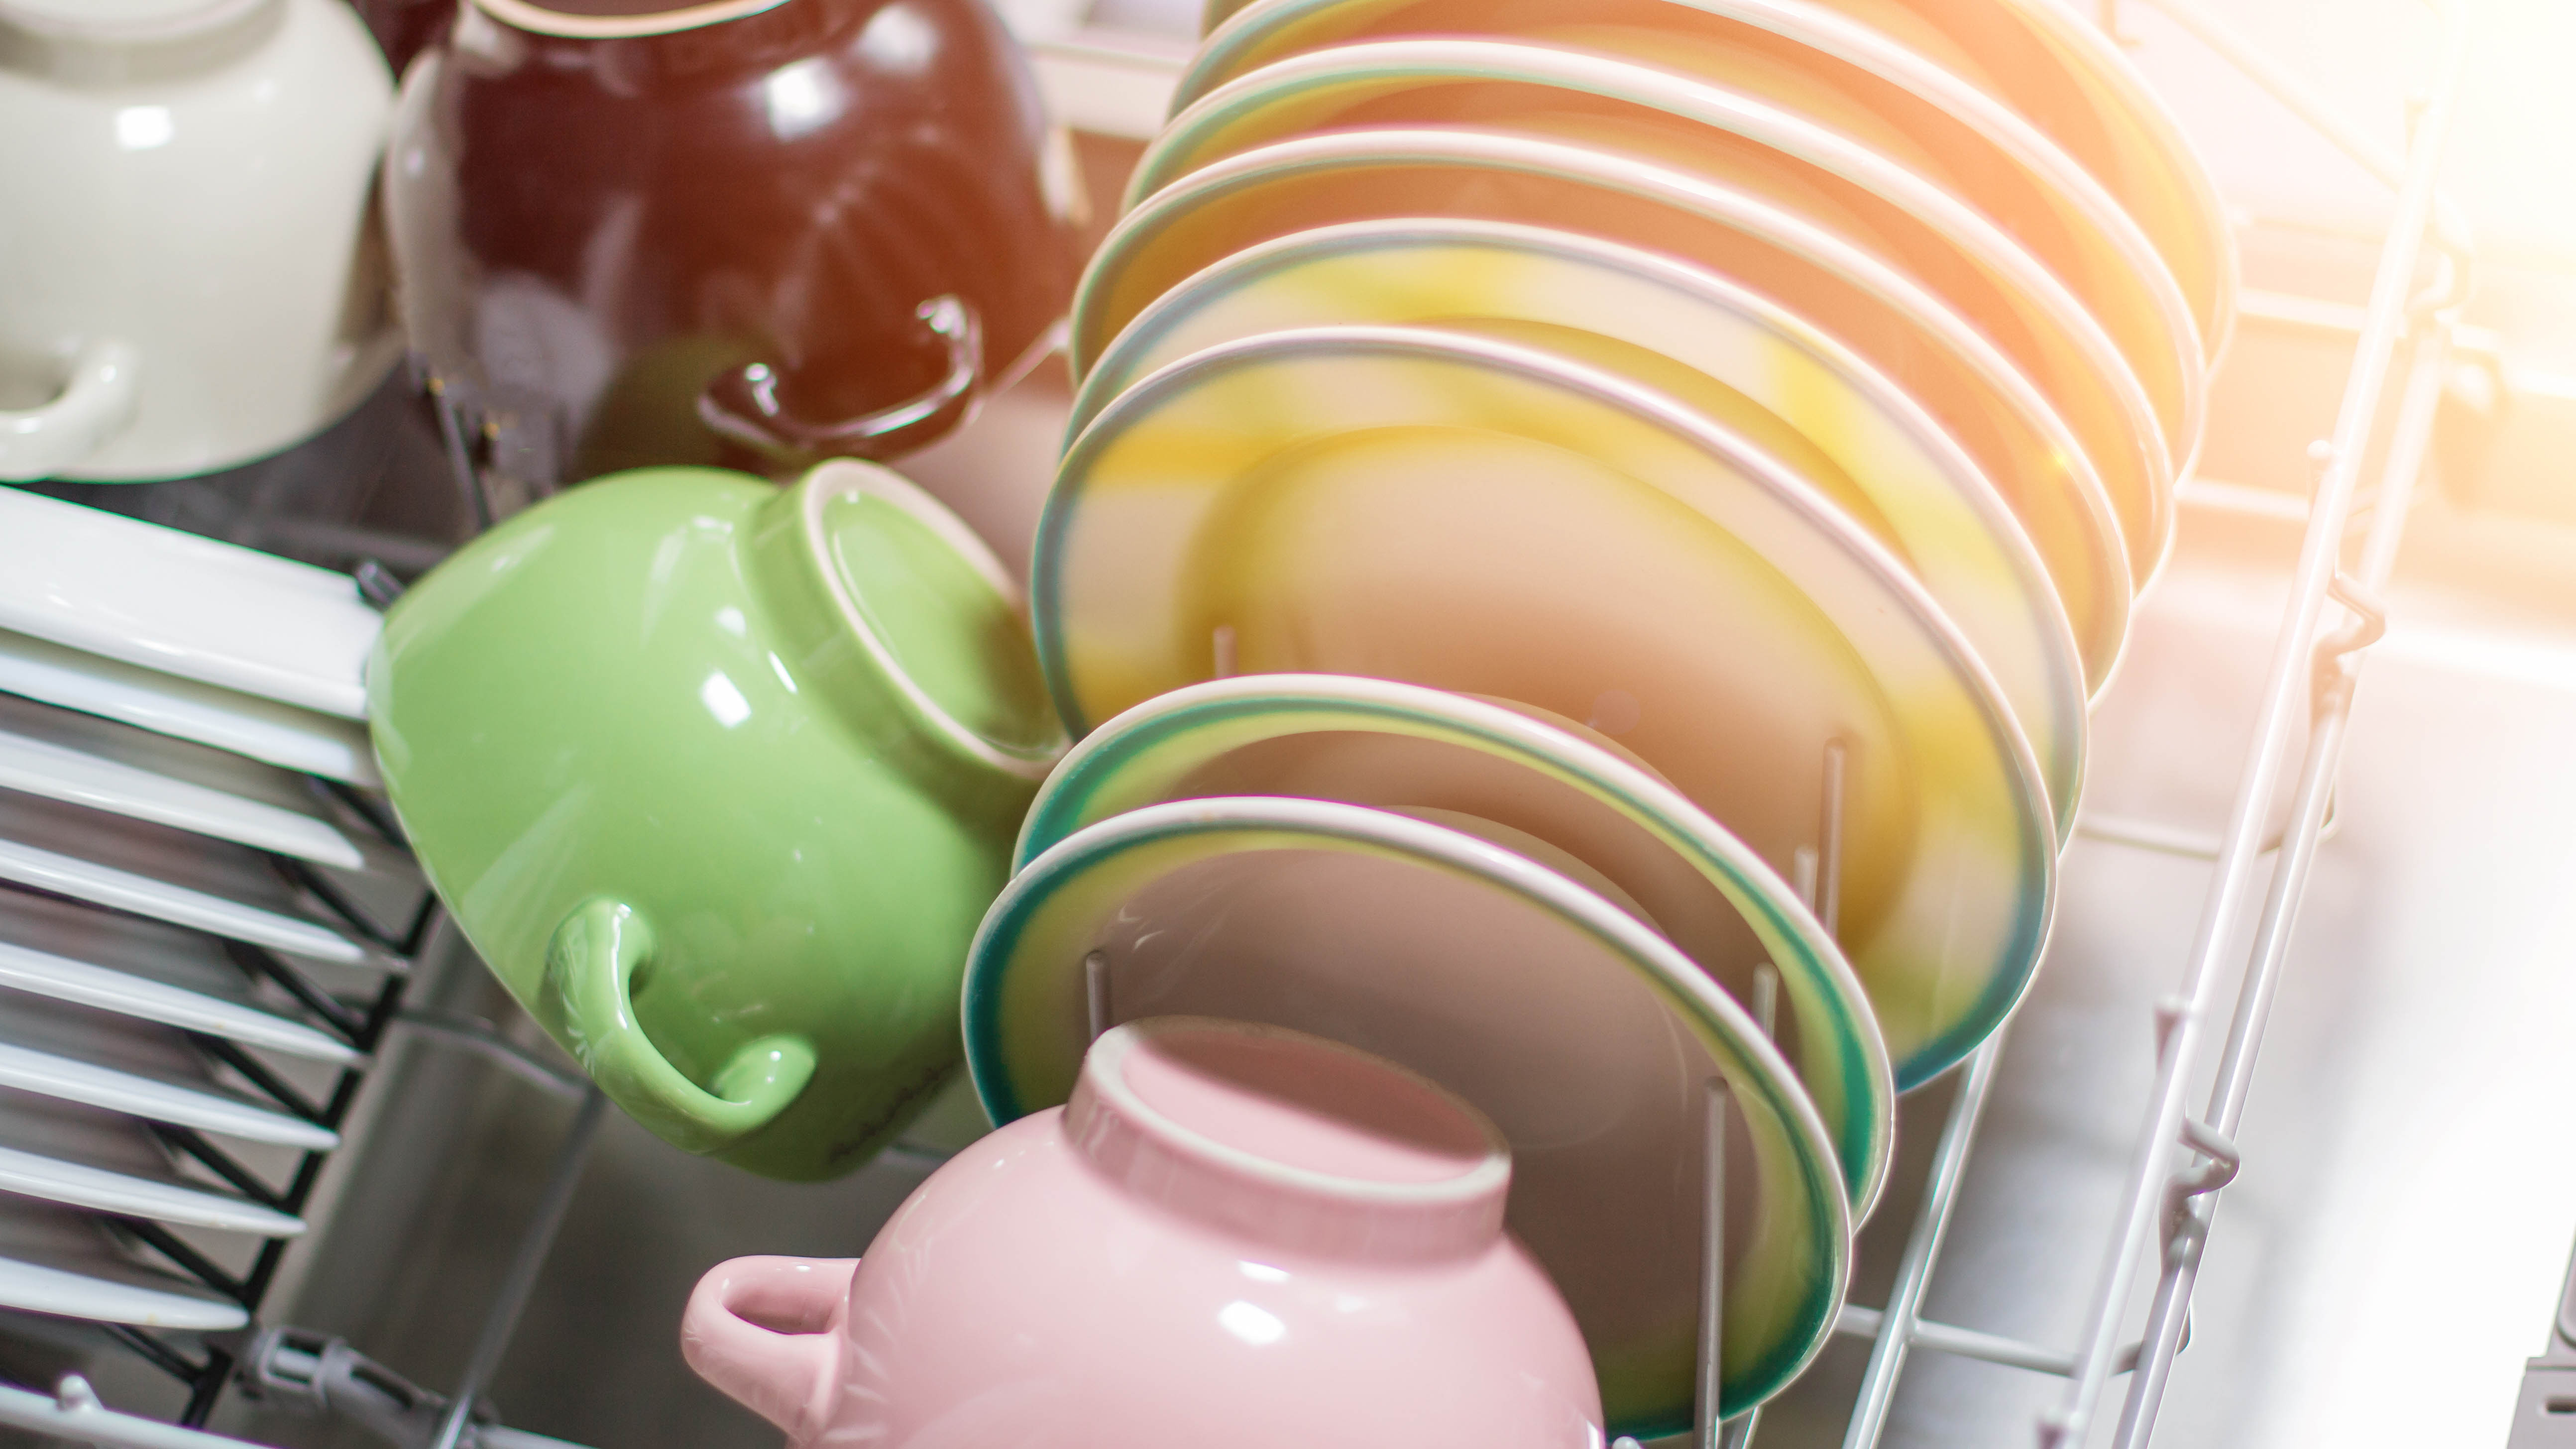 Посудомоечная машина, наполненная разноцветными тарелками и мисками